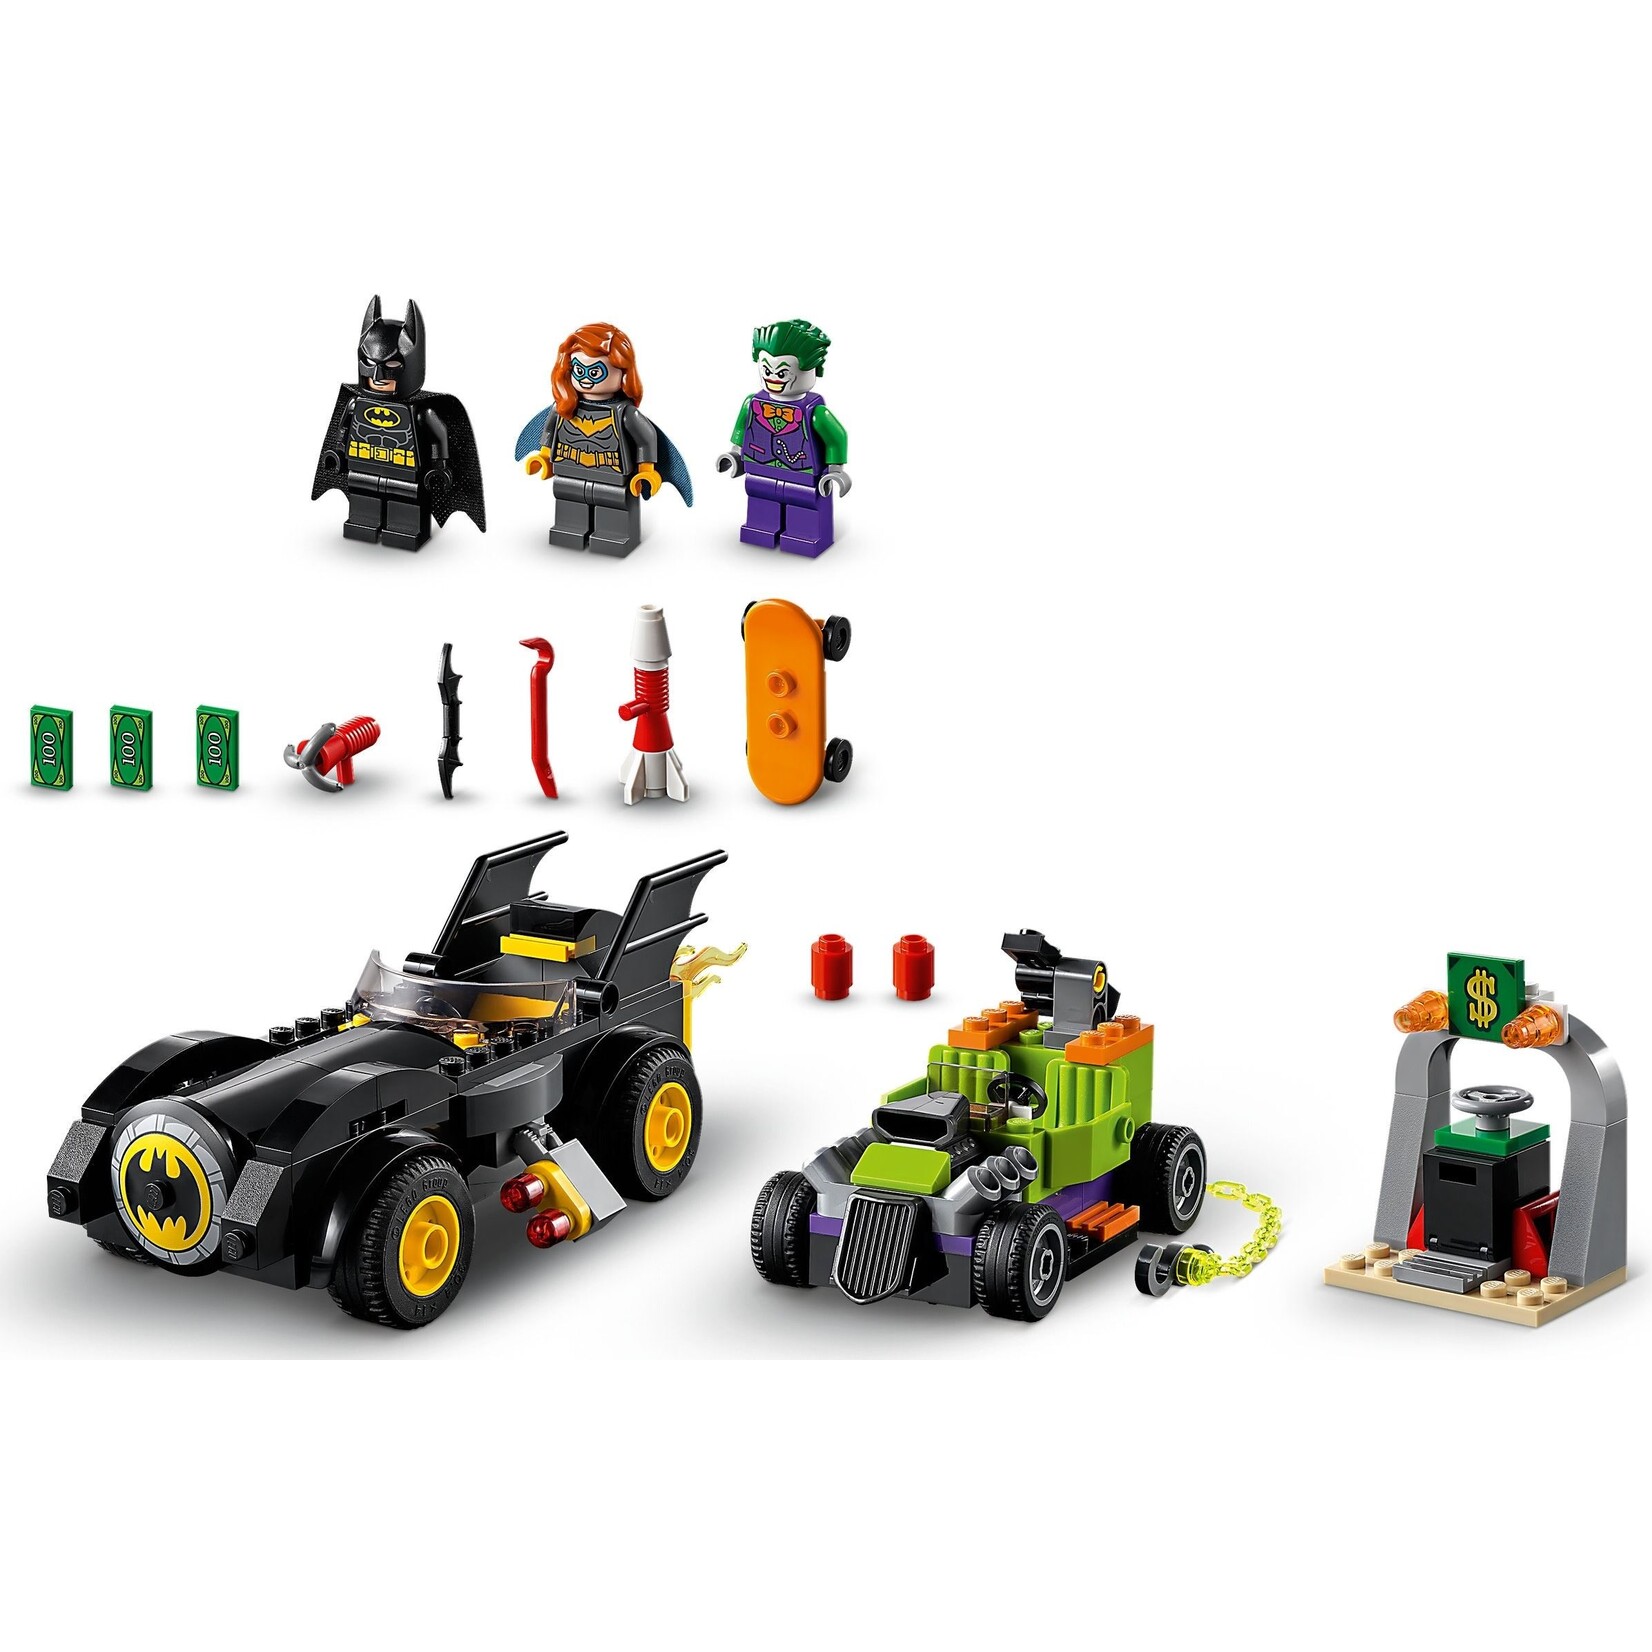 LEGO DC Batman Batmobile: Pursuit Of The Joker 76119 Building Kit